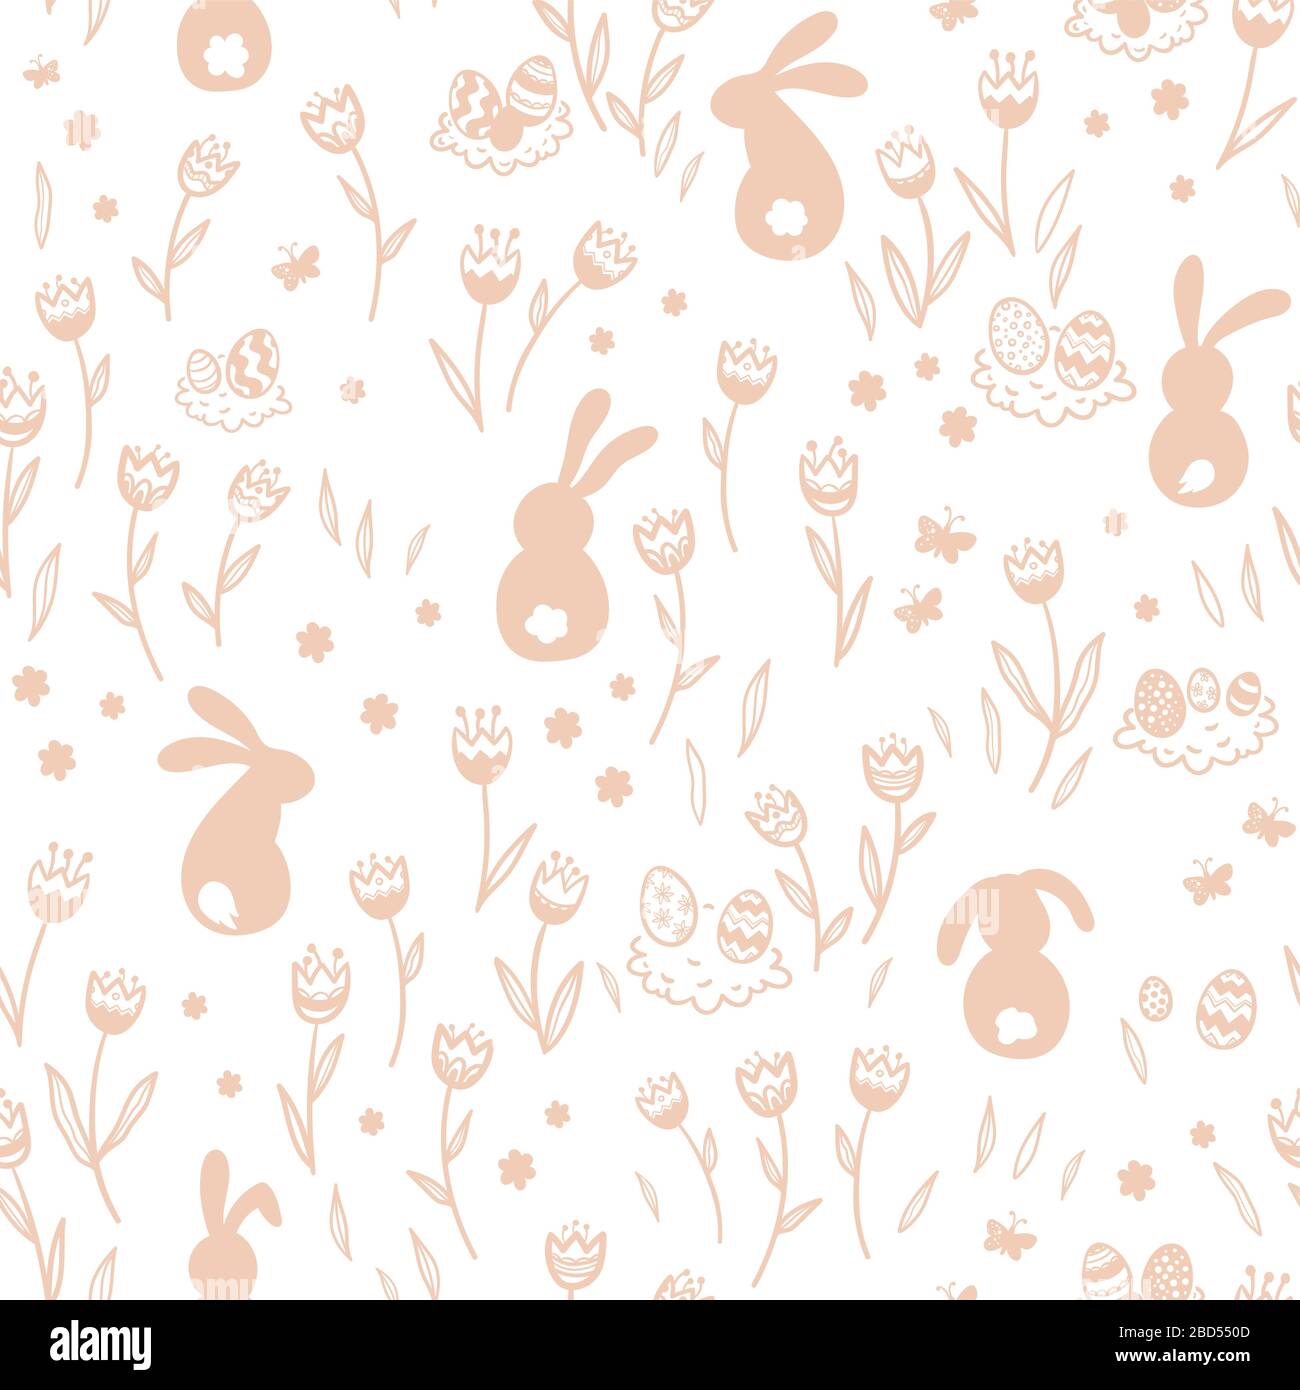 Joli motif de Pâques dessiné à la main avec des lapins, des fleurs, des œufs de pâques, un beau fond, idéal pour les cartes de Pâques, bannière, textiles, fonds d'écran Banque D'Images